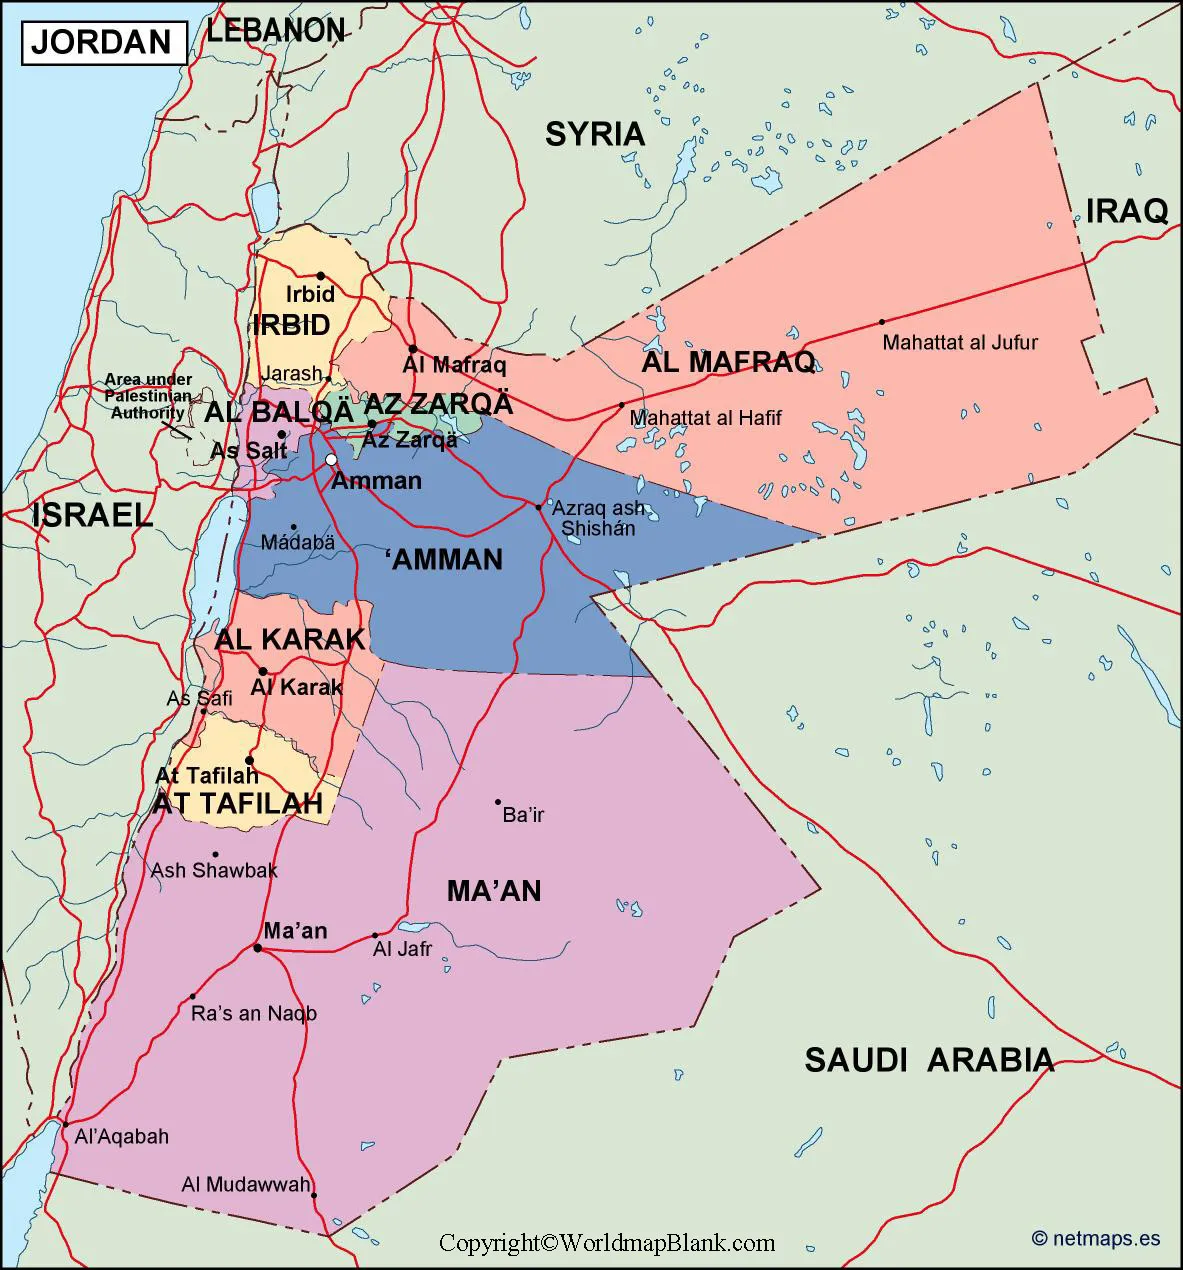 Labeled Map of Jordan